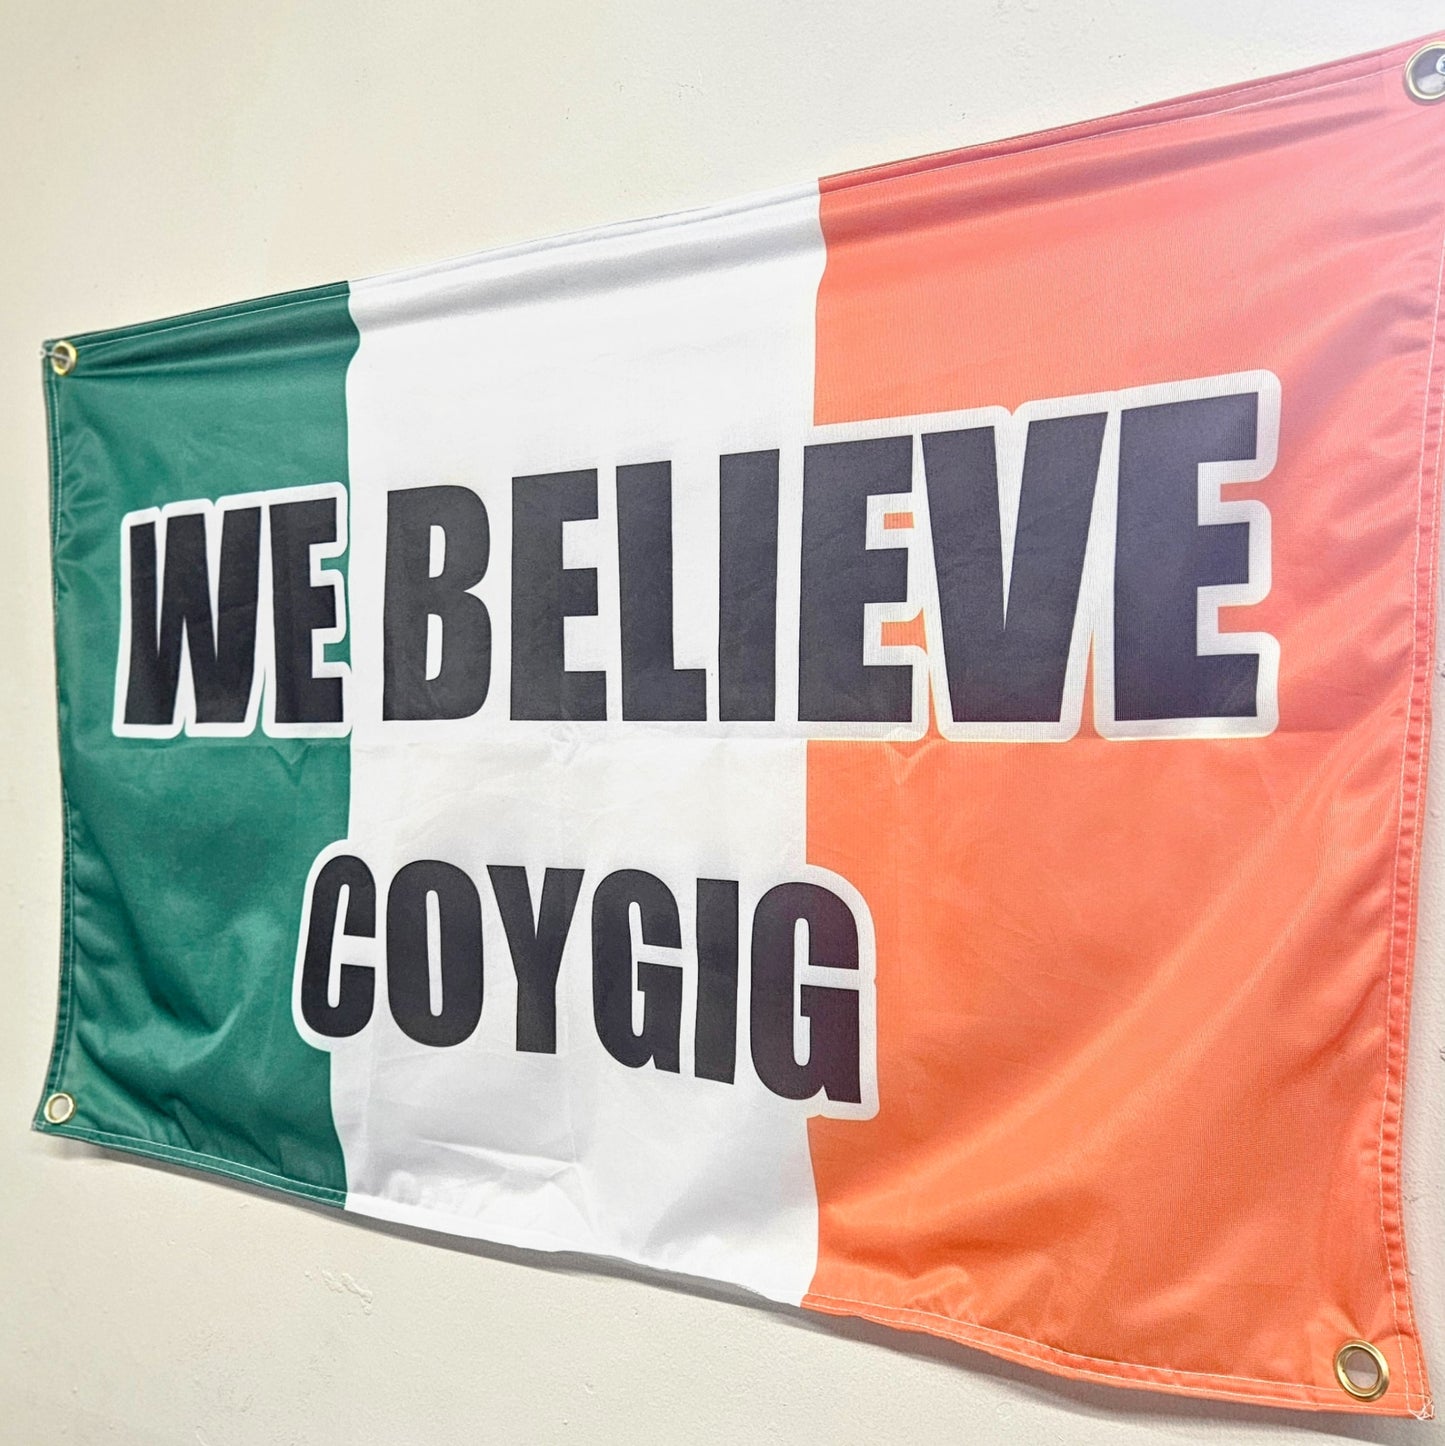 We Believe - COYGIG Ireland Flag